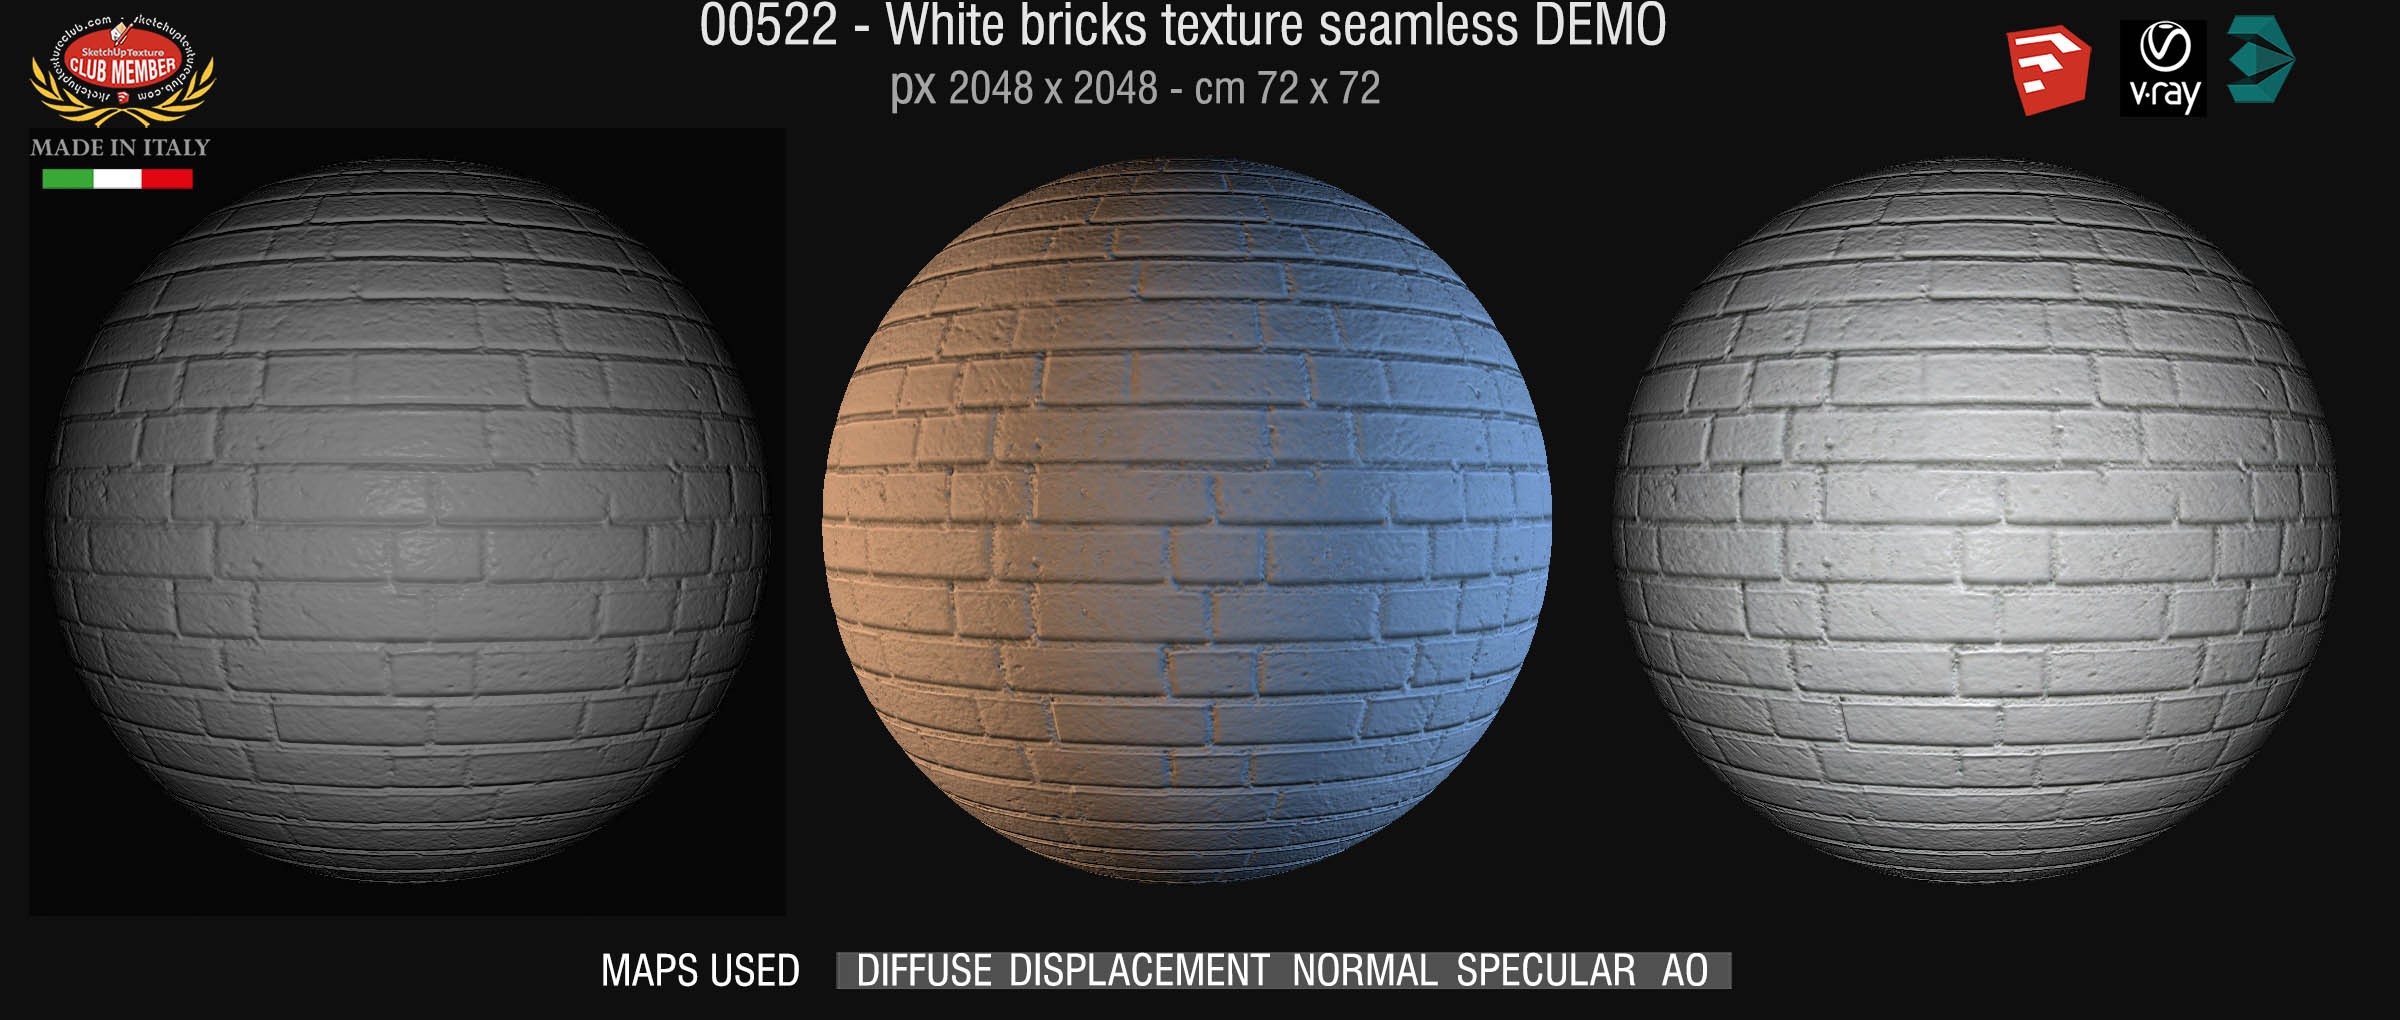 00522 White bricks texture seamless + maps DEMO